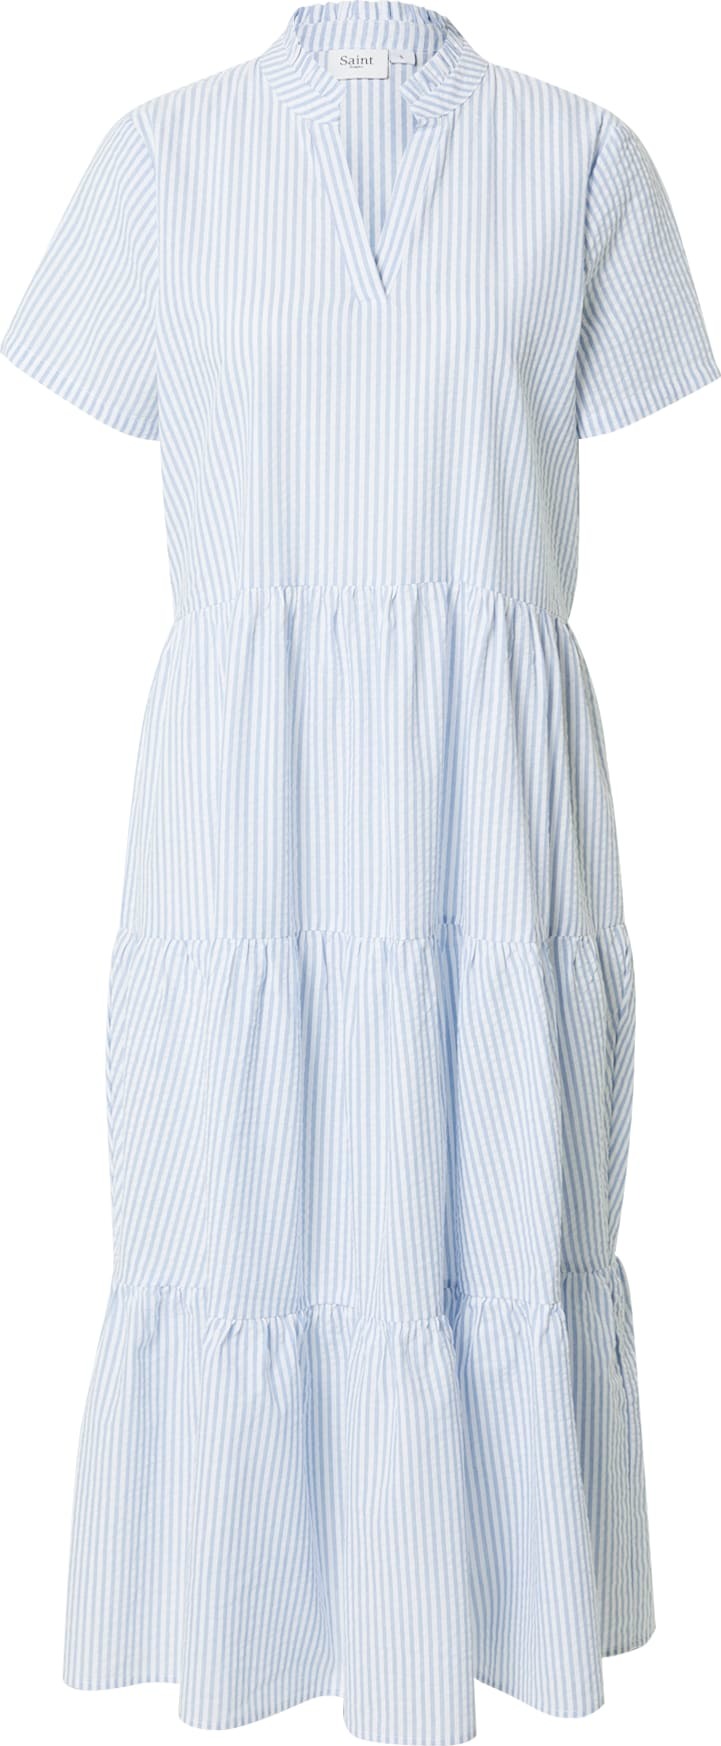 SAINT TROPEZ Košilové šaty 'Elmiko' světlemodrá / bílá